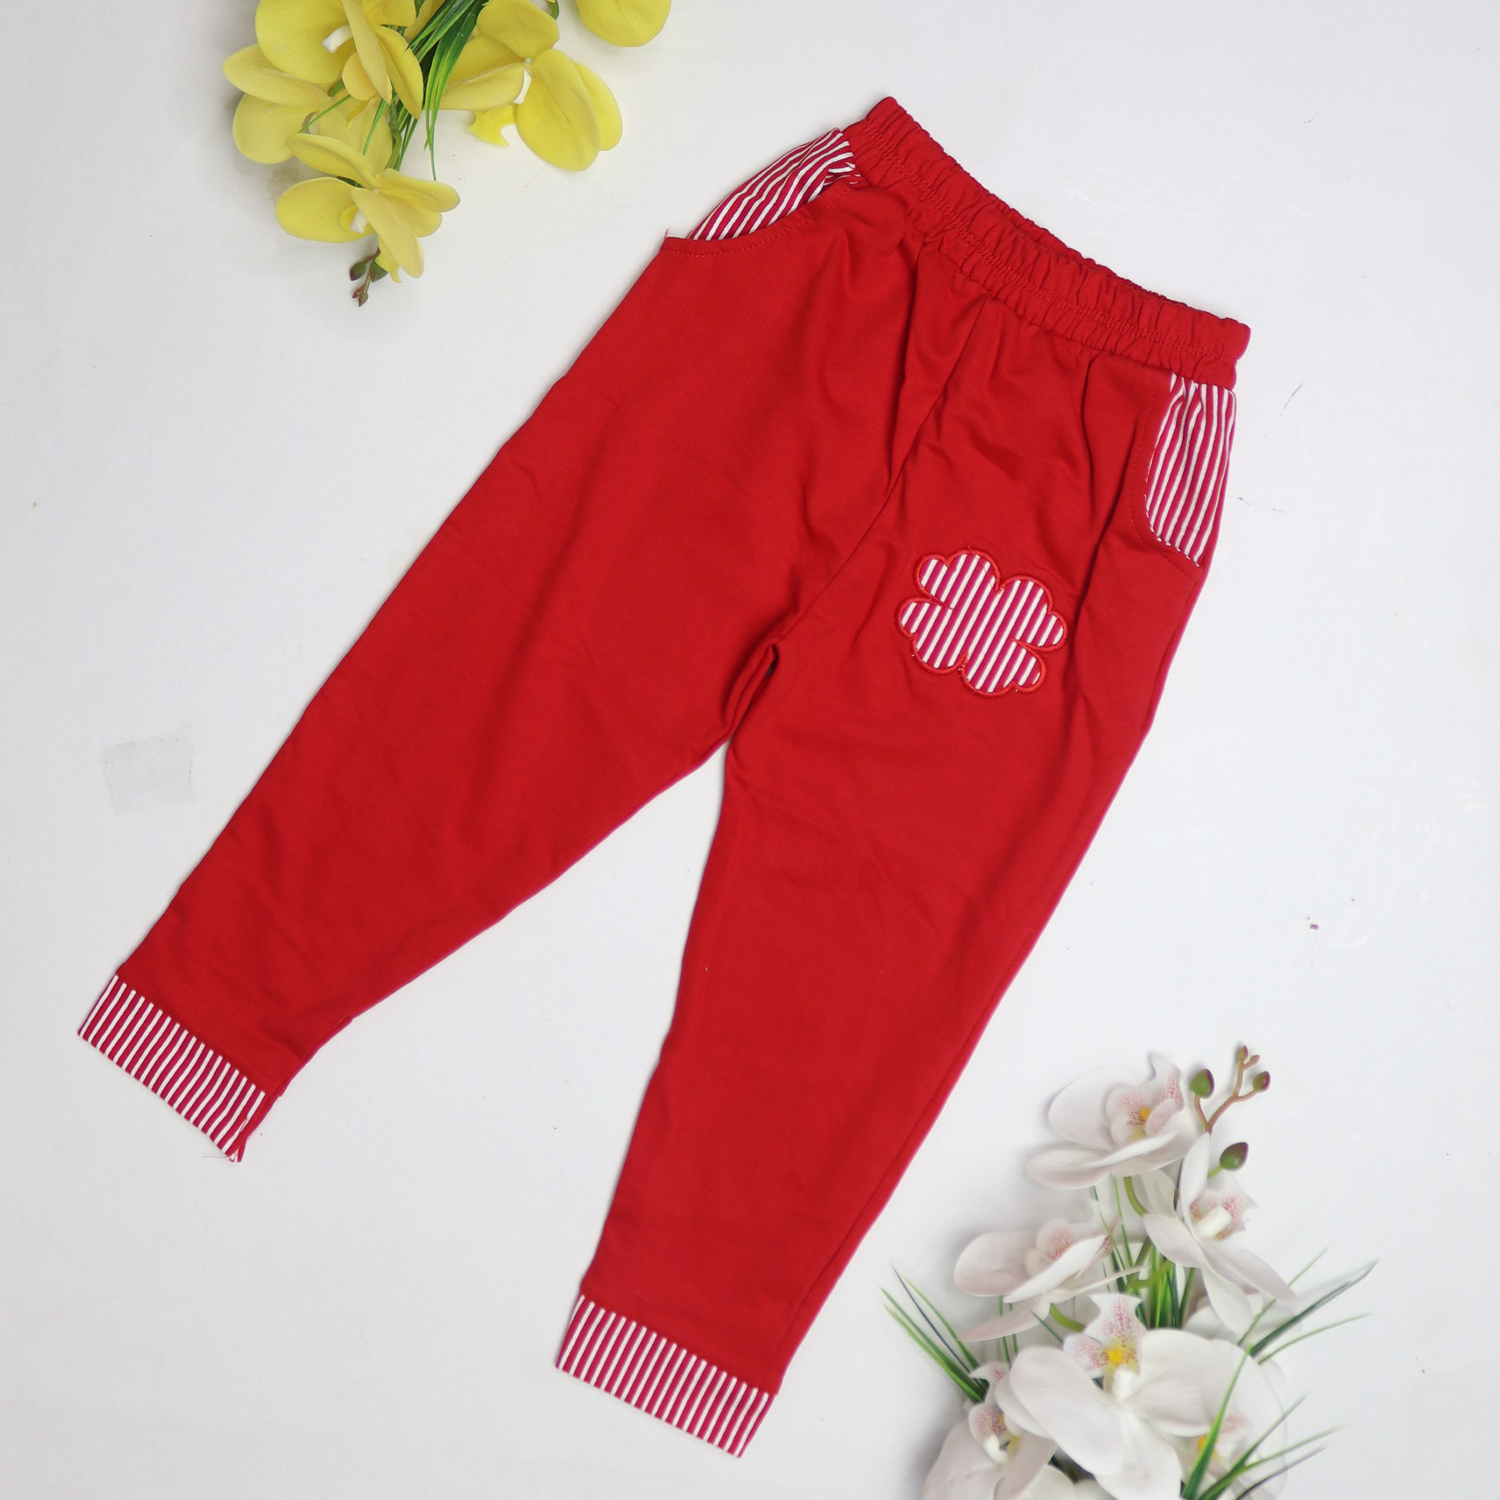 Soft Flower Design Trouser for Girls